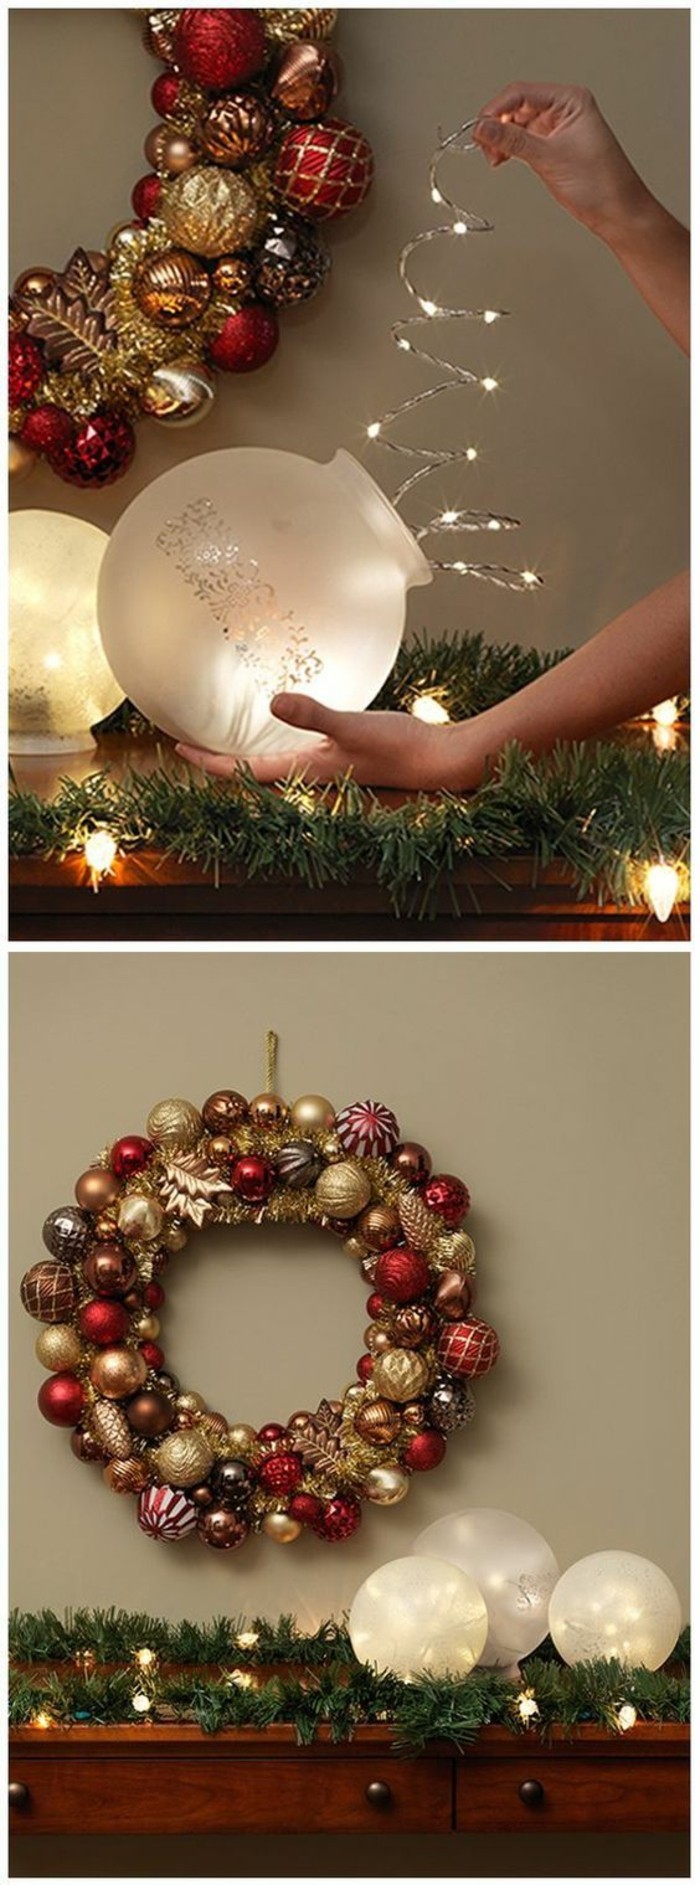 5 bolas de Navidad-decoraciones para bricolaje de decisiones Adventskranz-ideas-off Adviento-Navidad